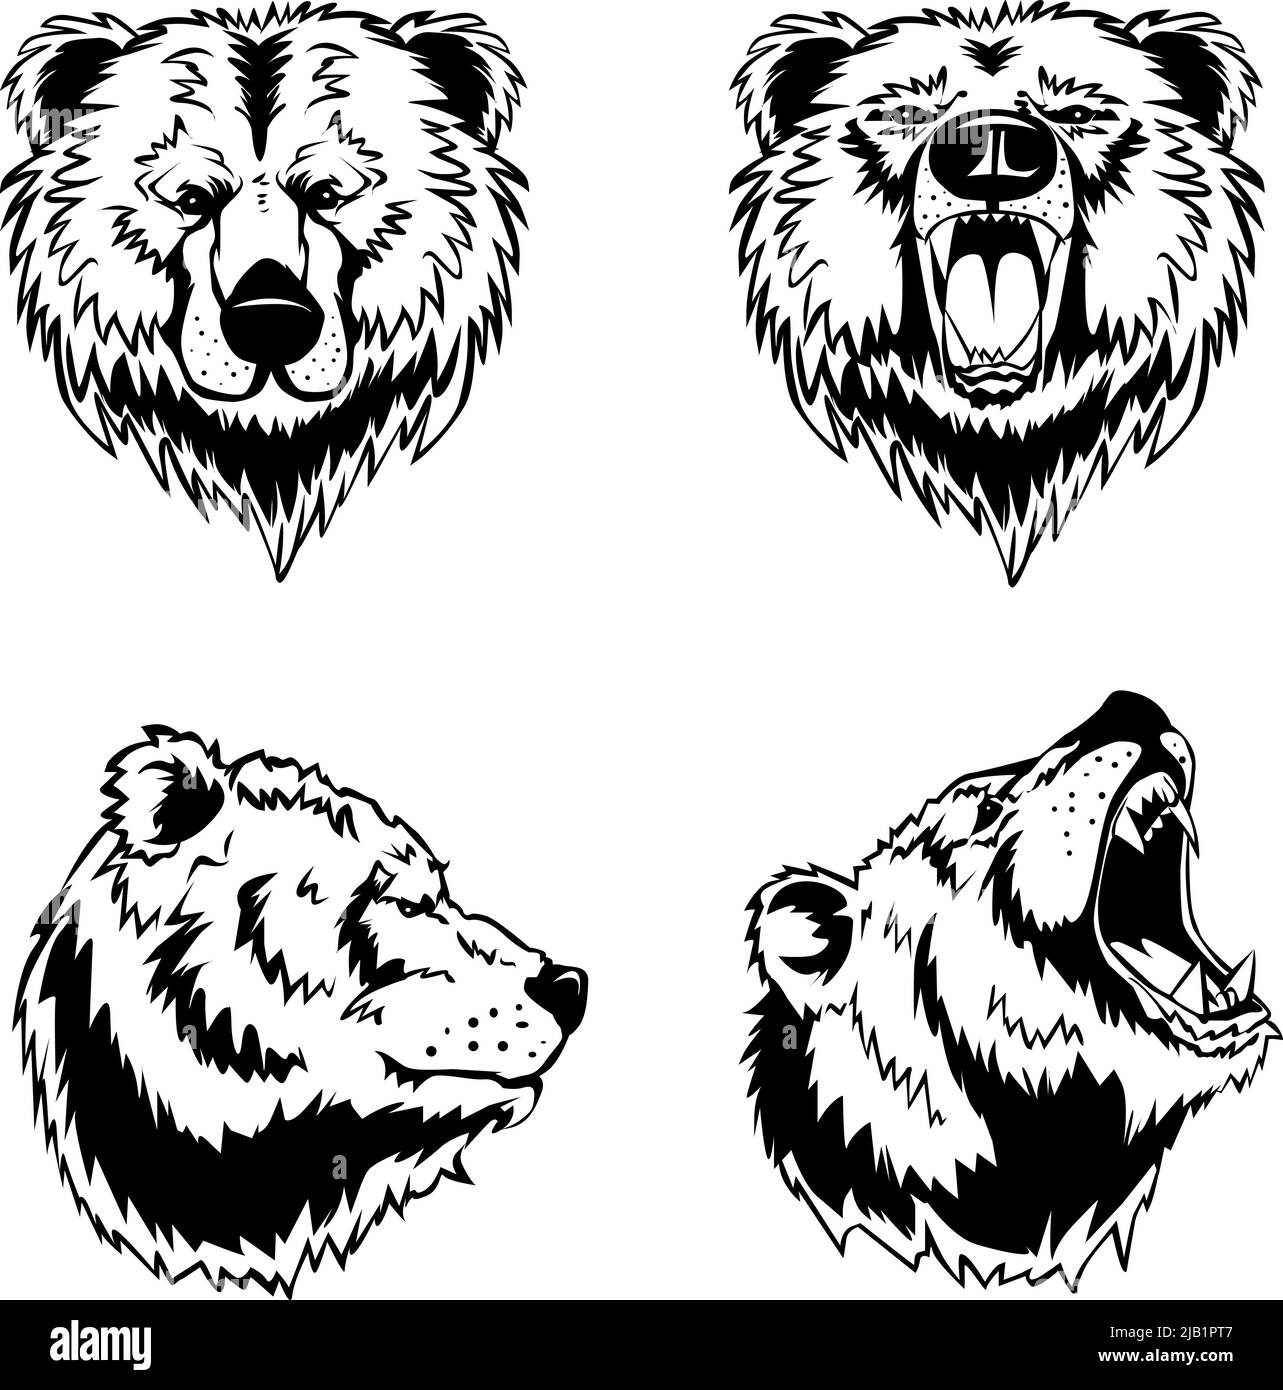 Grabados de tinta dibujados a mano conjunto de cuatro cabezas de oso en diferentes ángulos y estados de ánimo aislados sobre ilustración vectorial de fondo blanco Ilustración del Vector